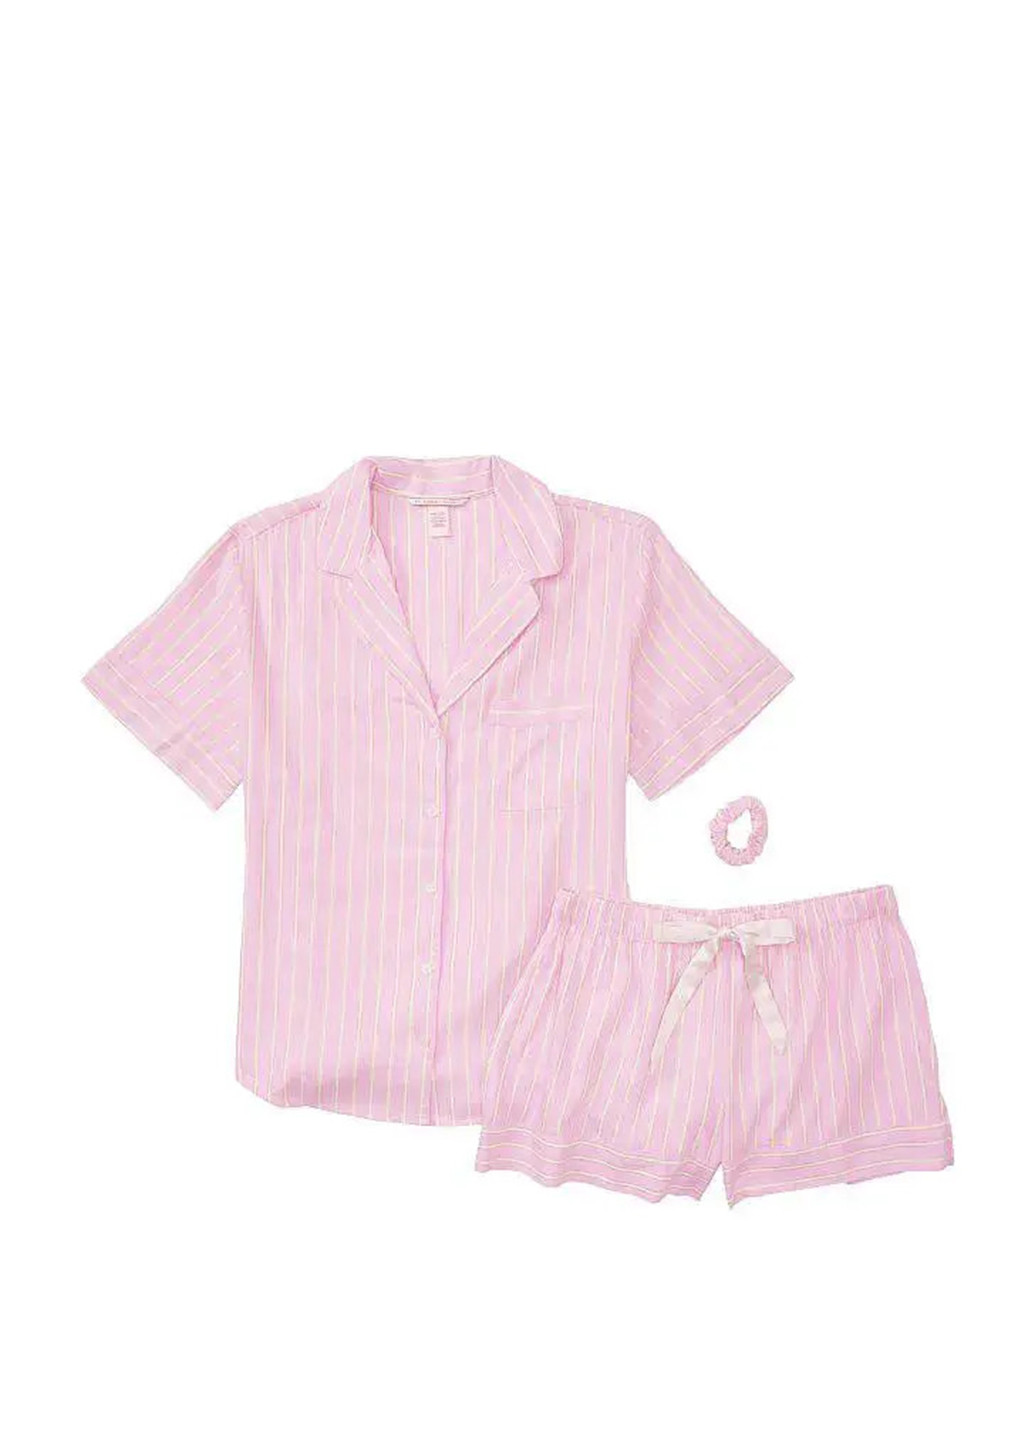 Светло-розовая всесезон пижама (рубашка, шорты) рубашка + шорты Victoria's Secret